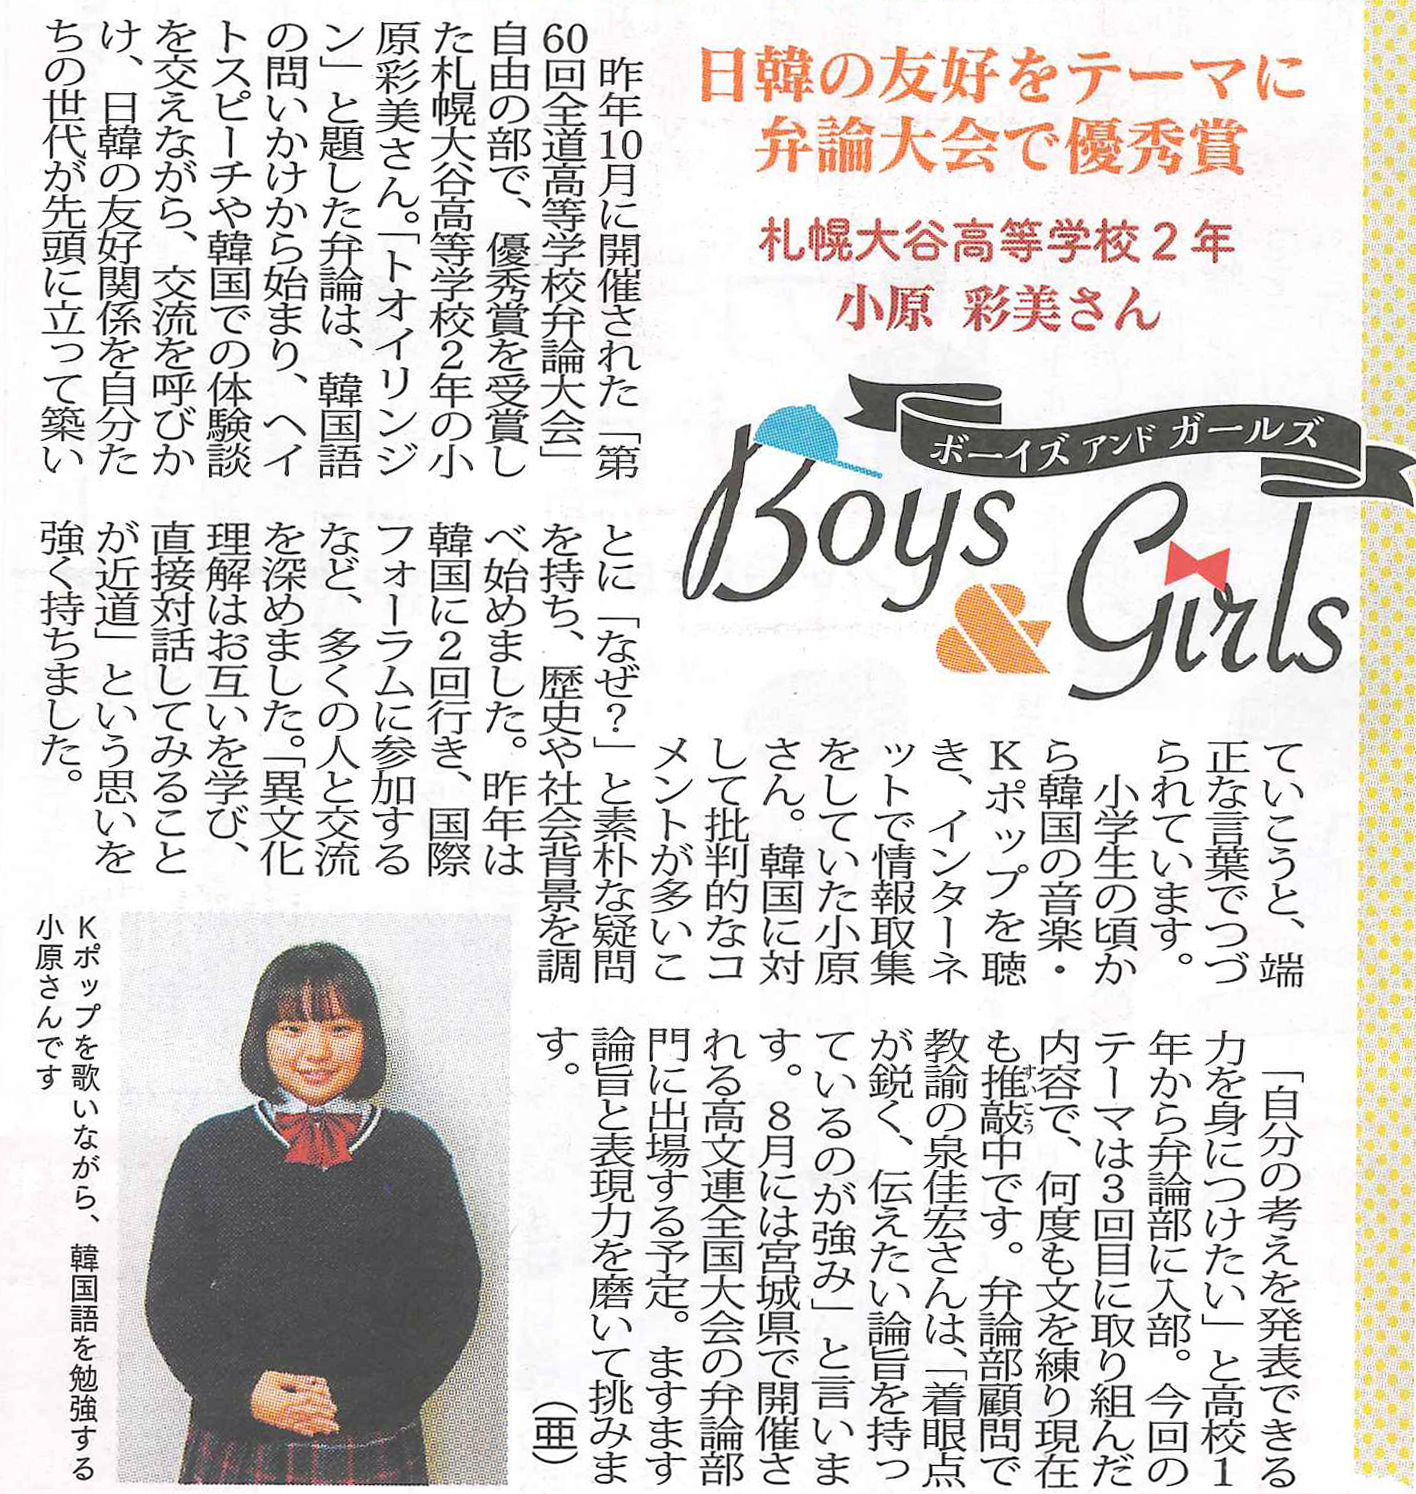 札幌大谷中学校 高等学校 弁論部の活躍の記事が 北海道新聞 札歩路 ２月号に掲載されました